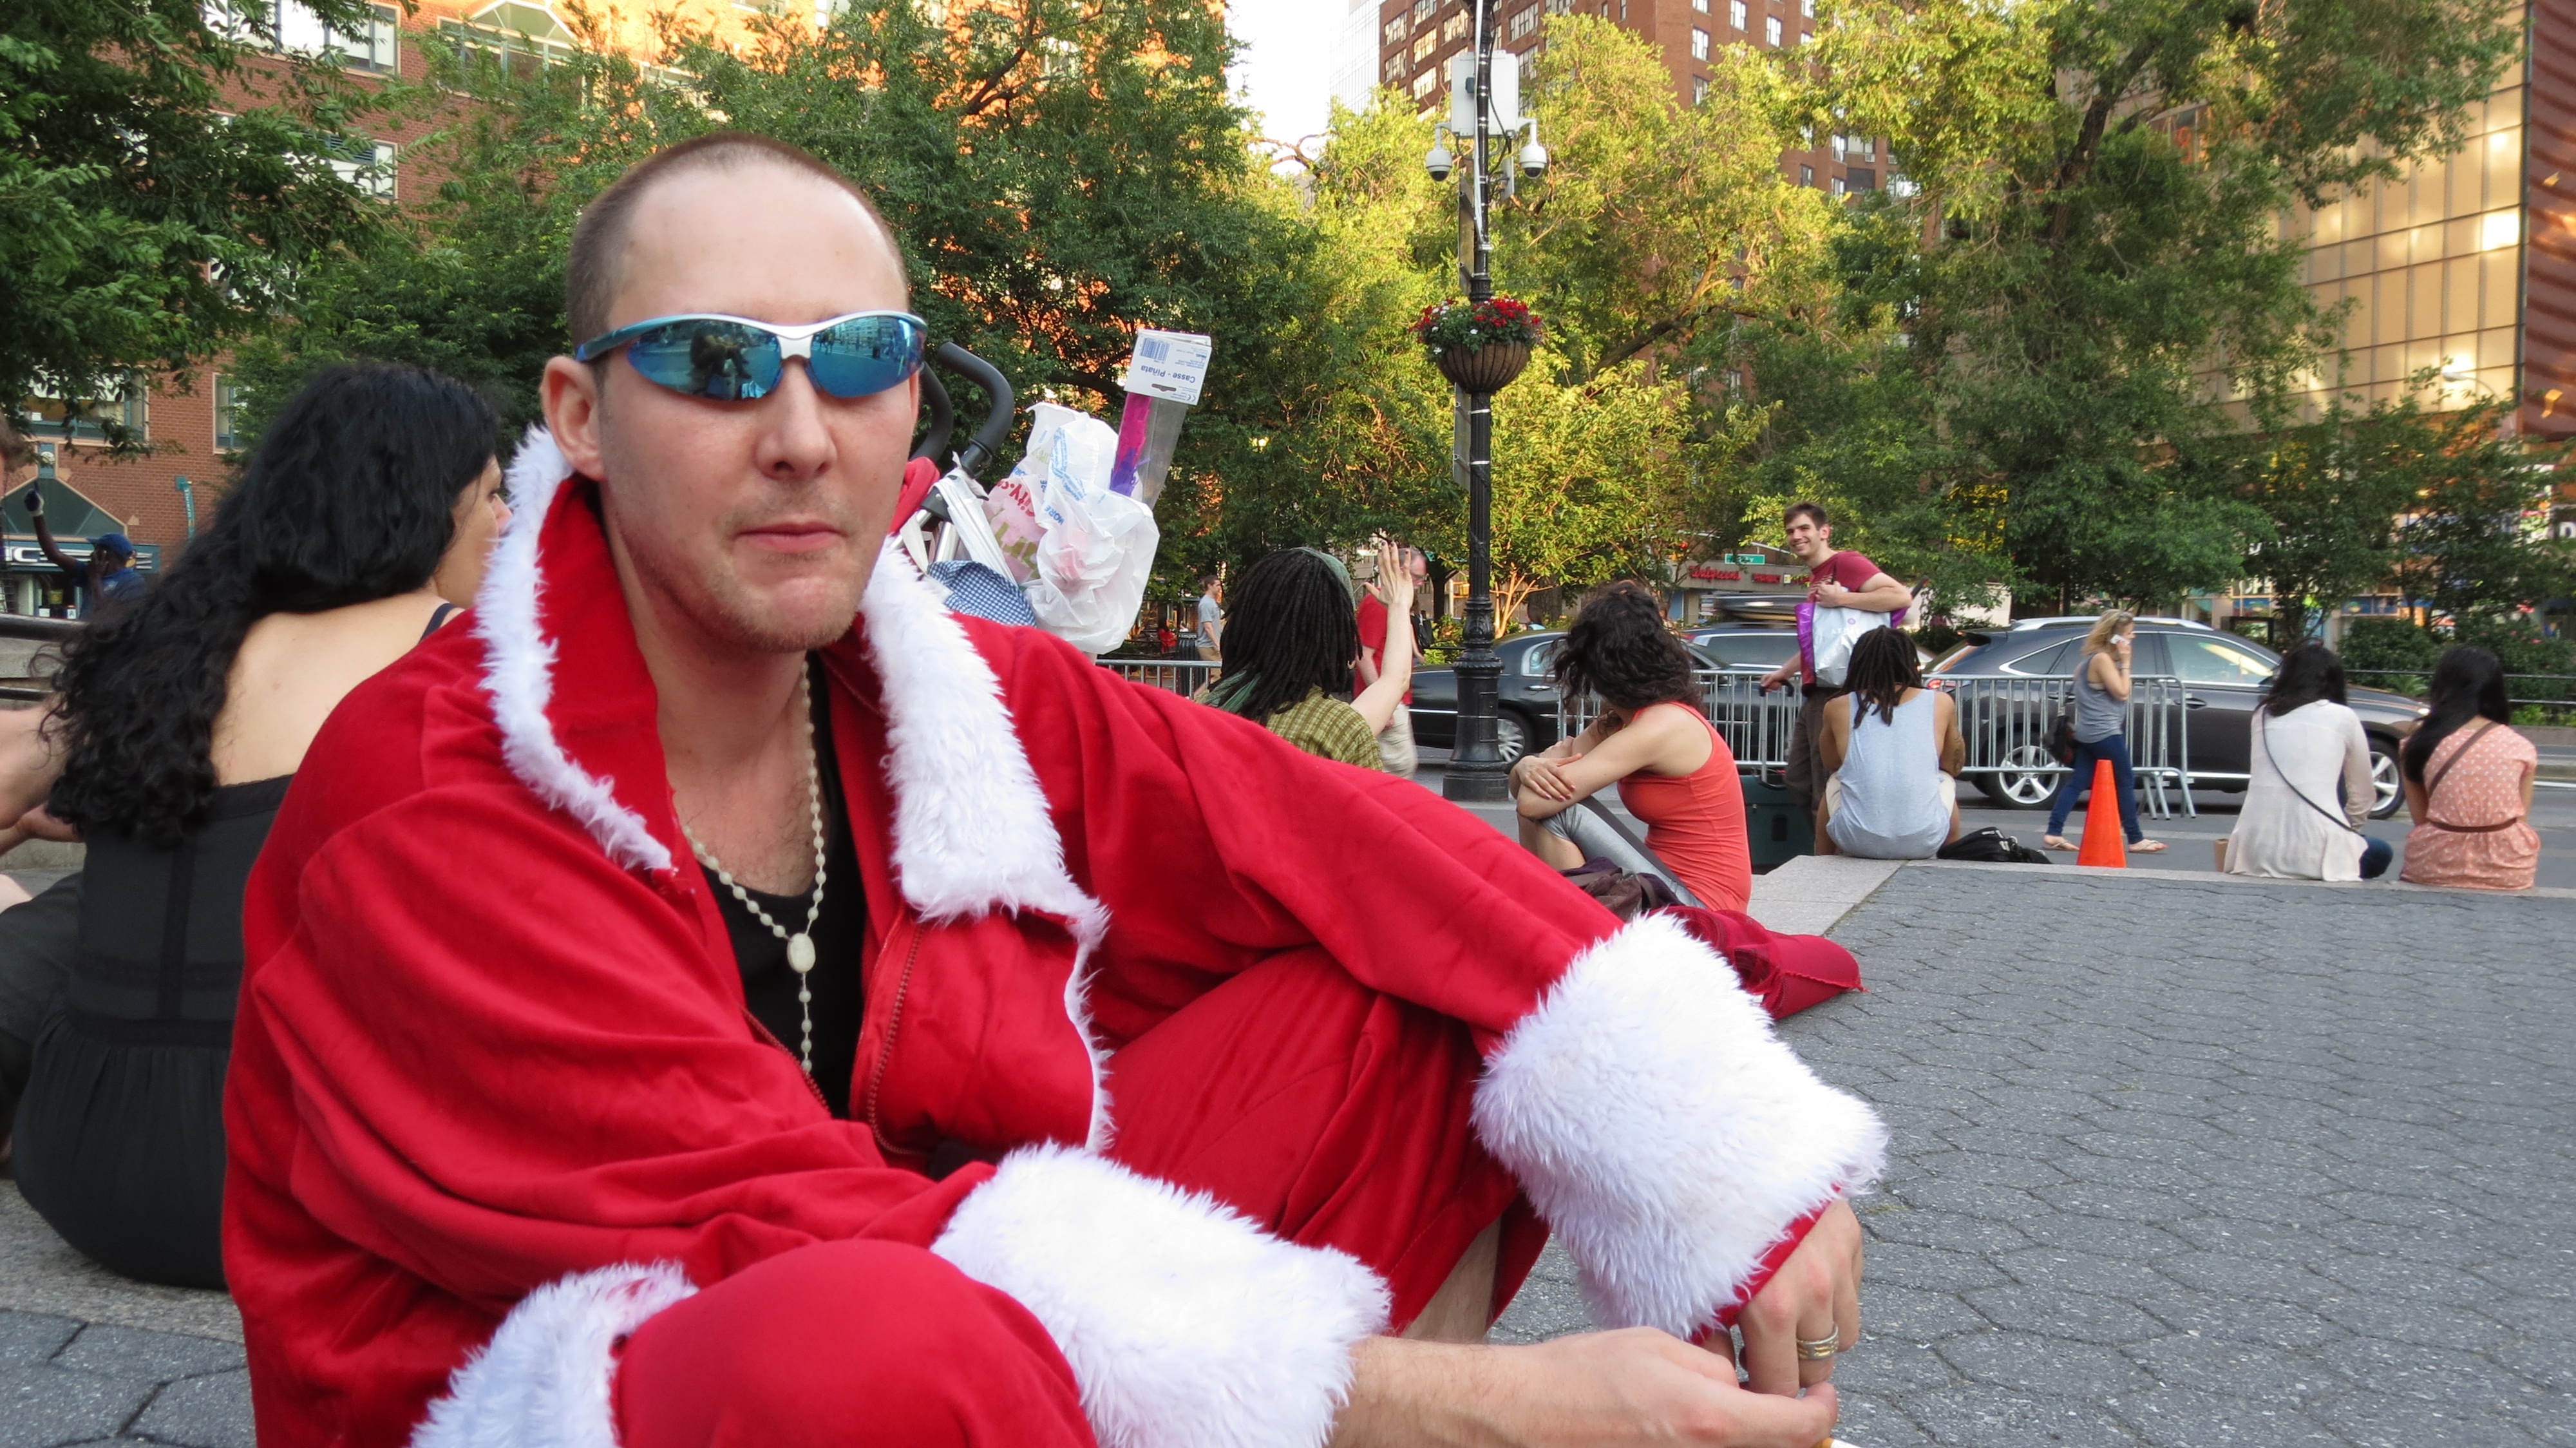 Man dressed as Santa and shades